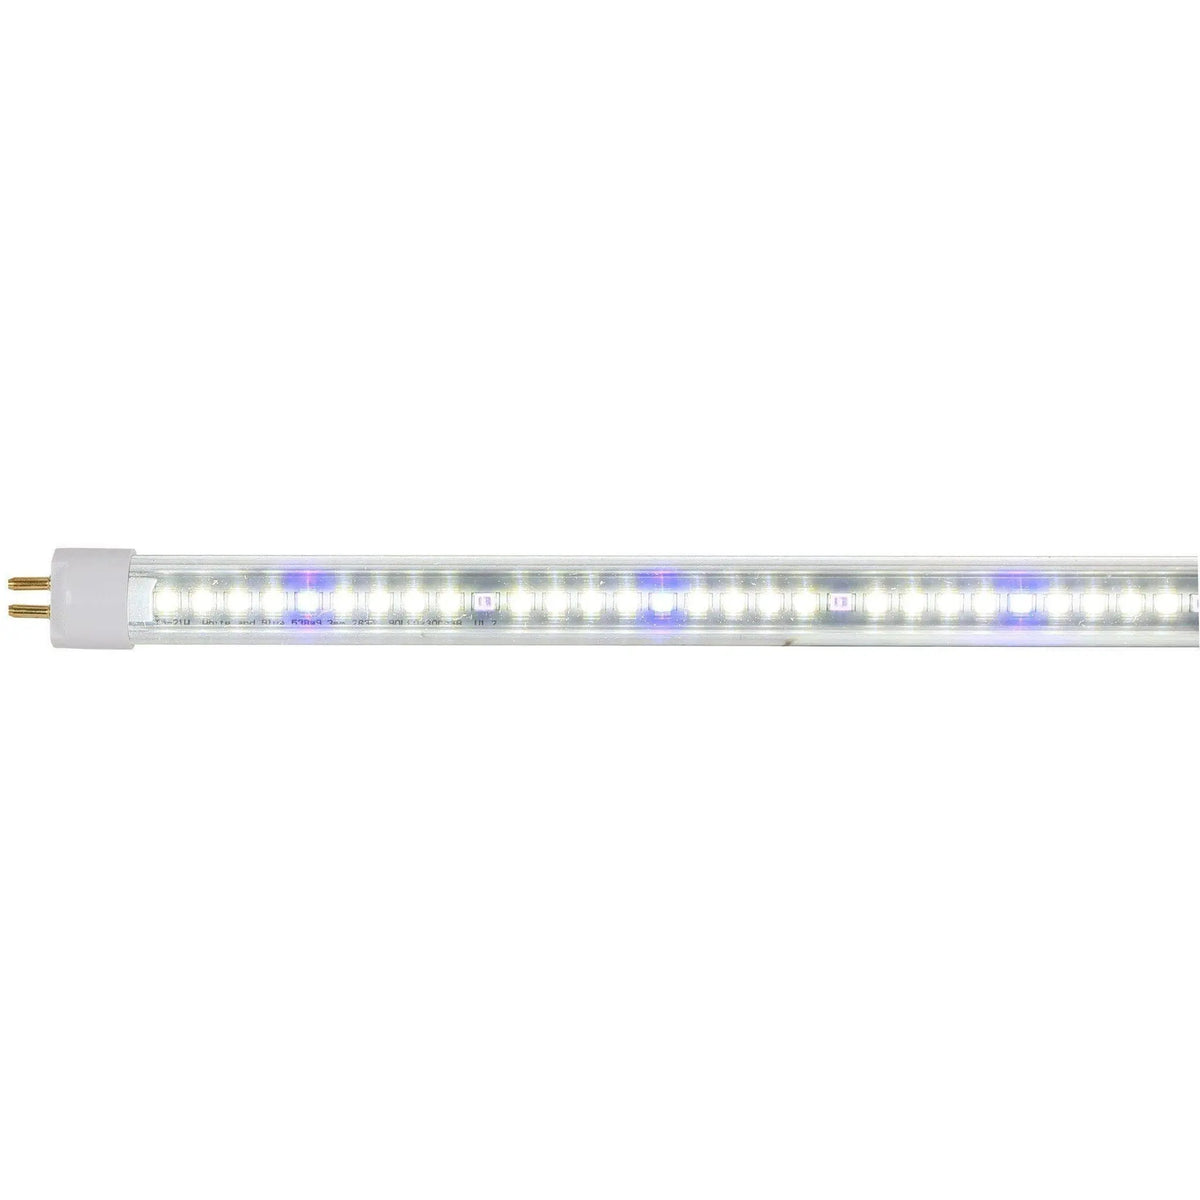 AgroLED iSunlight® 41 Watt T5 Vegetative + UV LED Grow Lamp, 4' AgroLED